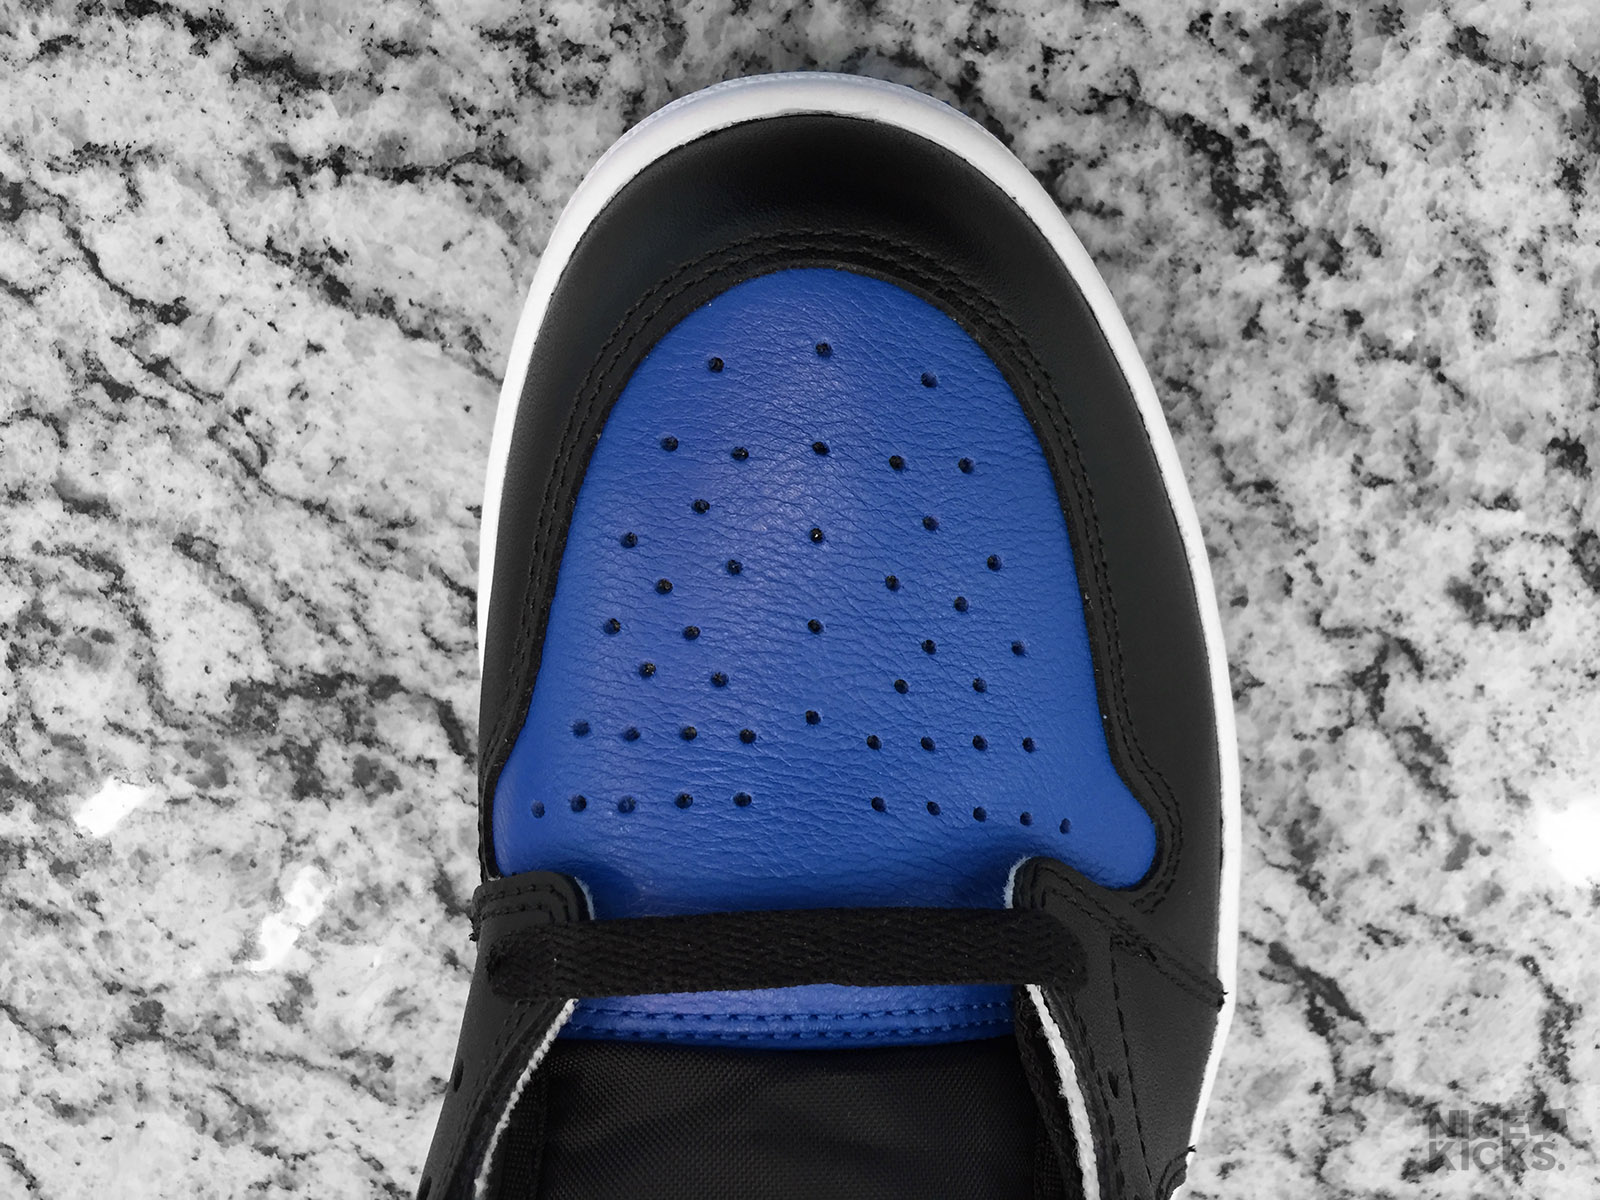 Air Jordan 1 “Royal” – 12/29 pair – right foot